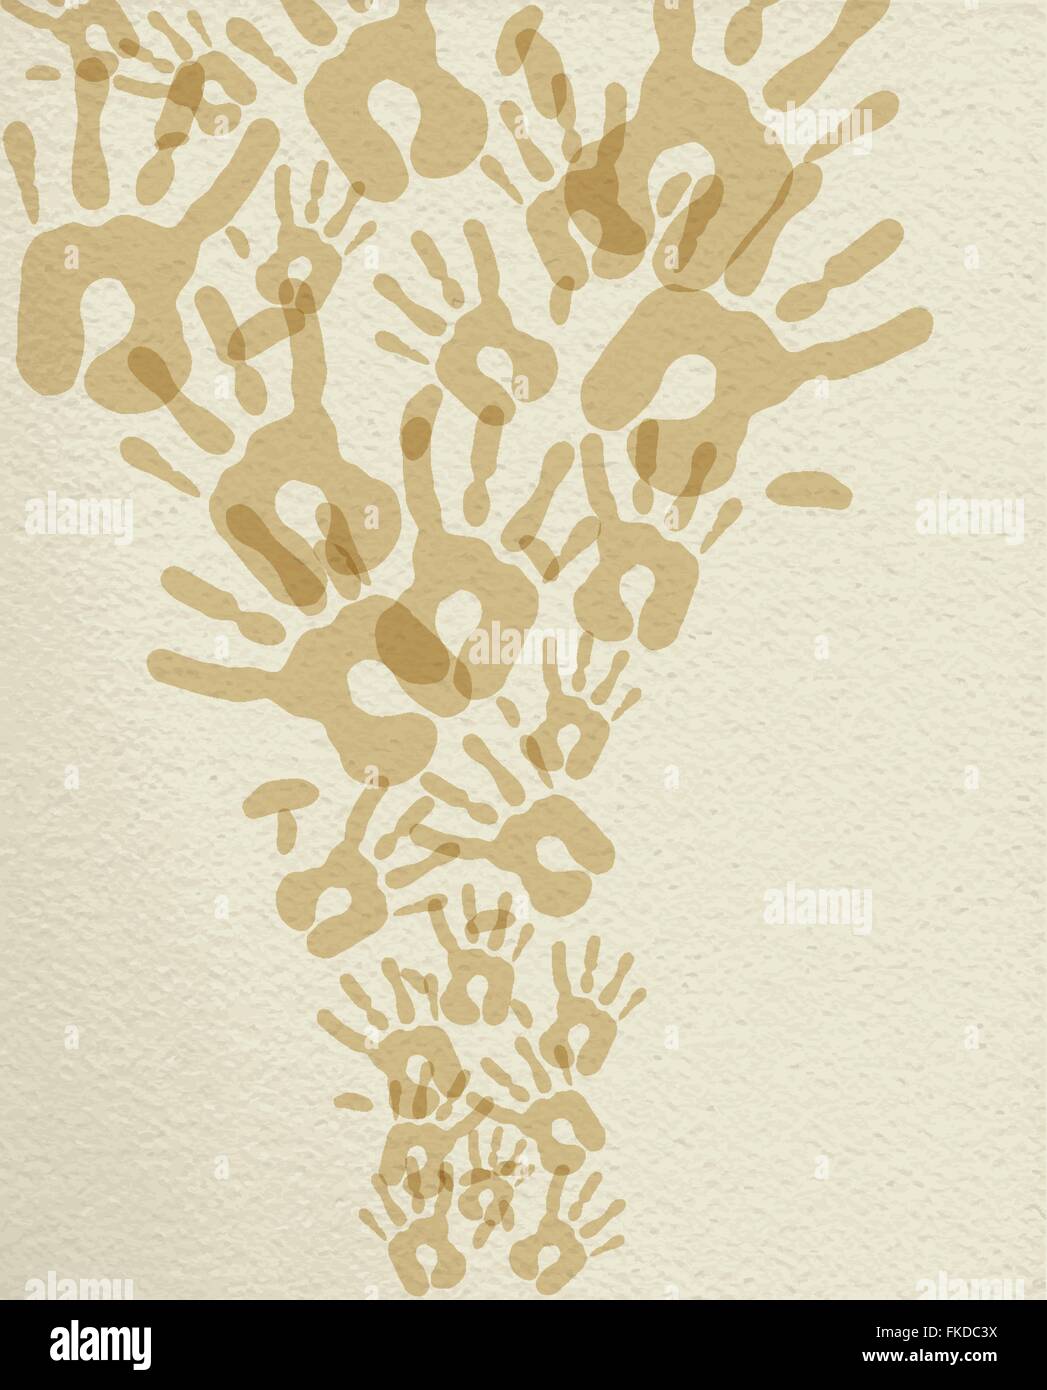 Weltgemeinschaft Hilfe Hand Illustration Handabdrücke in Sepia Farbe über strukturierten Hintergrund. EPS10 Vektor. Stock Vektor